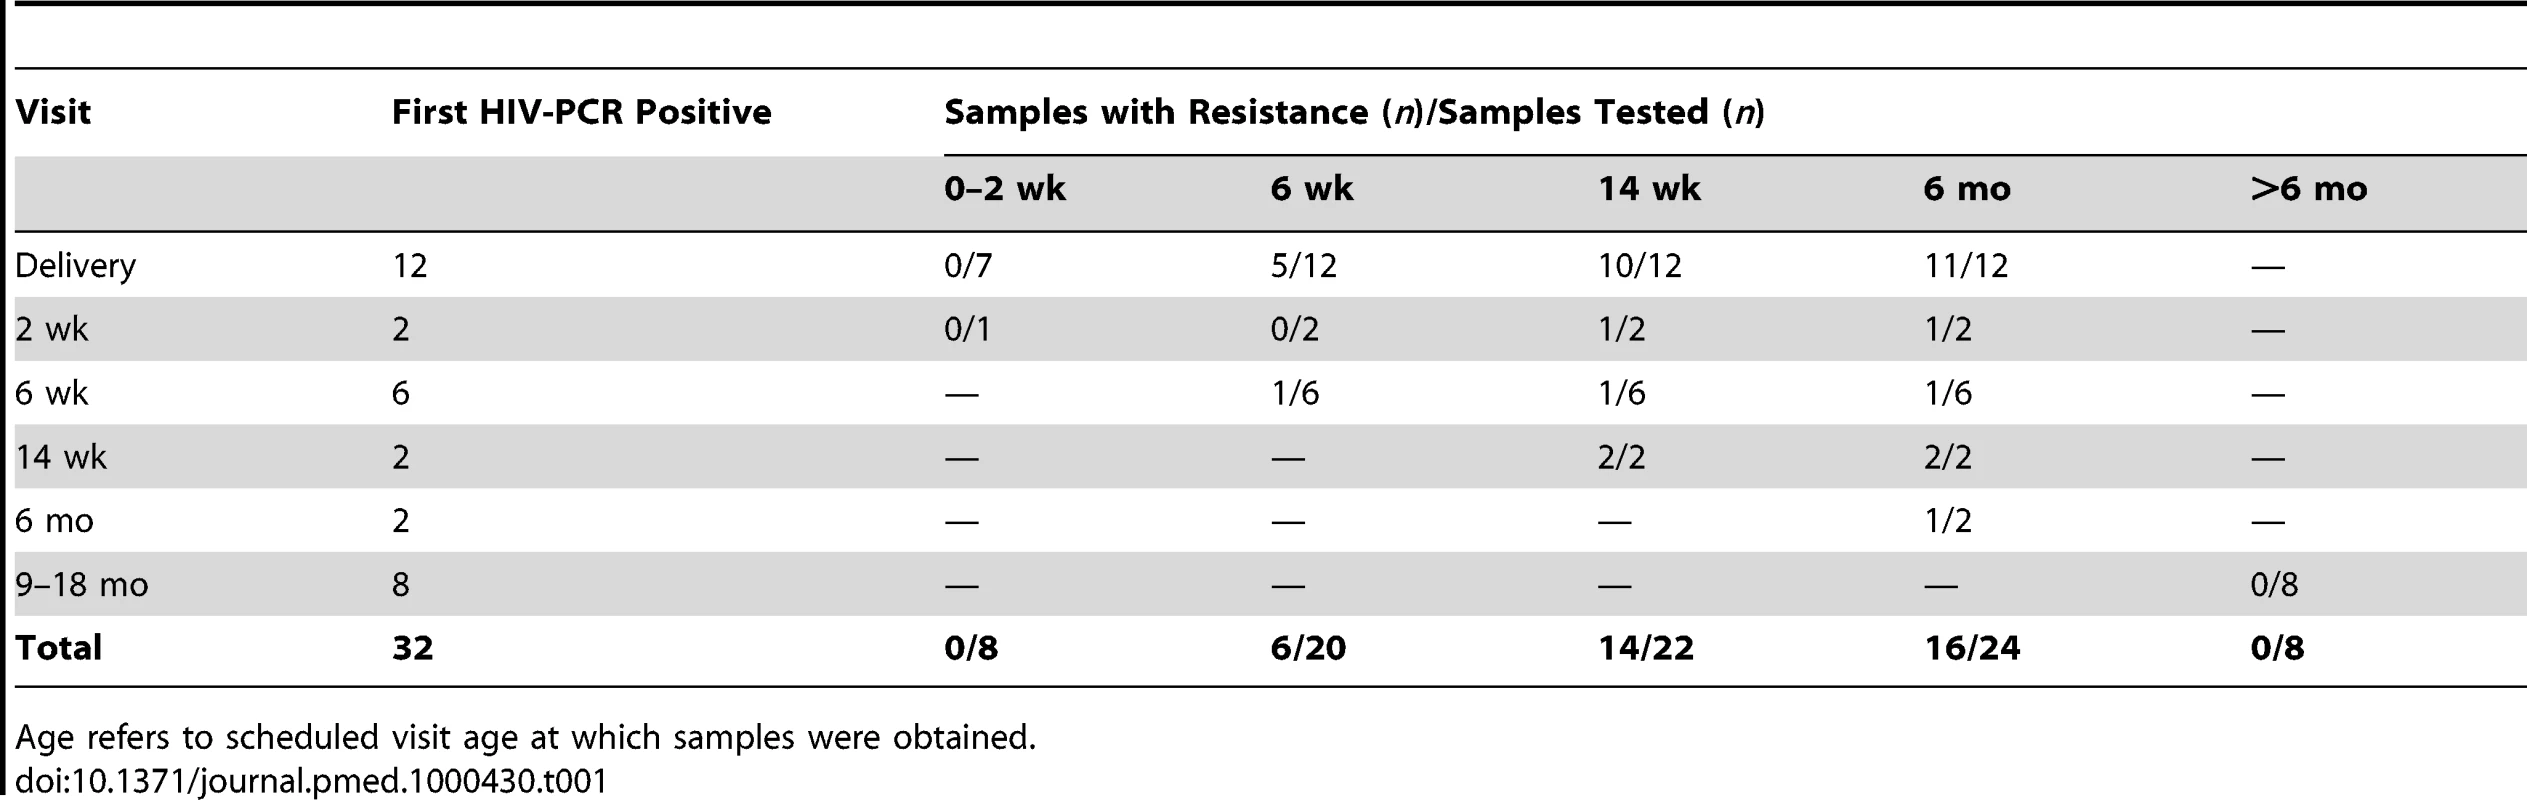 HIV-1 drug resistance emergence among breastfeeding infants in the Kisumu Breastfeeding (KiBS) trial, Kenya, 2003–2008.